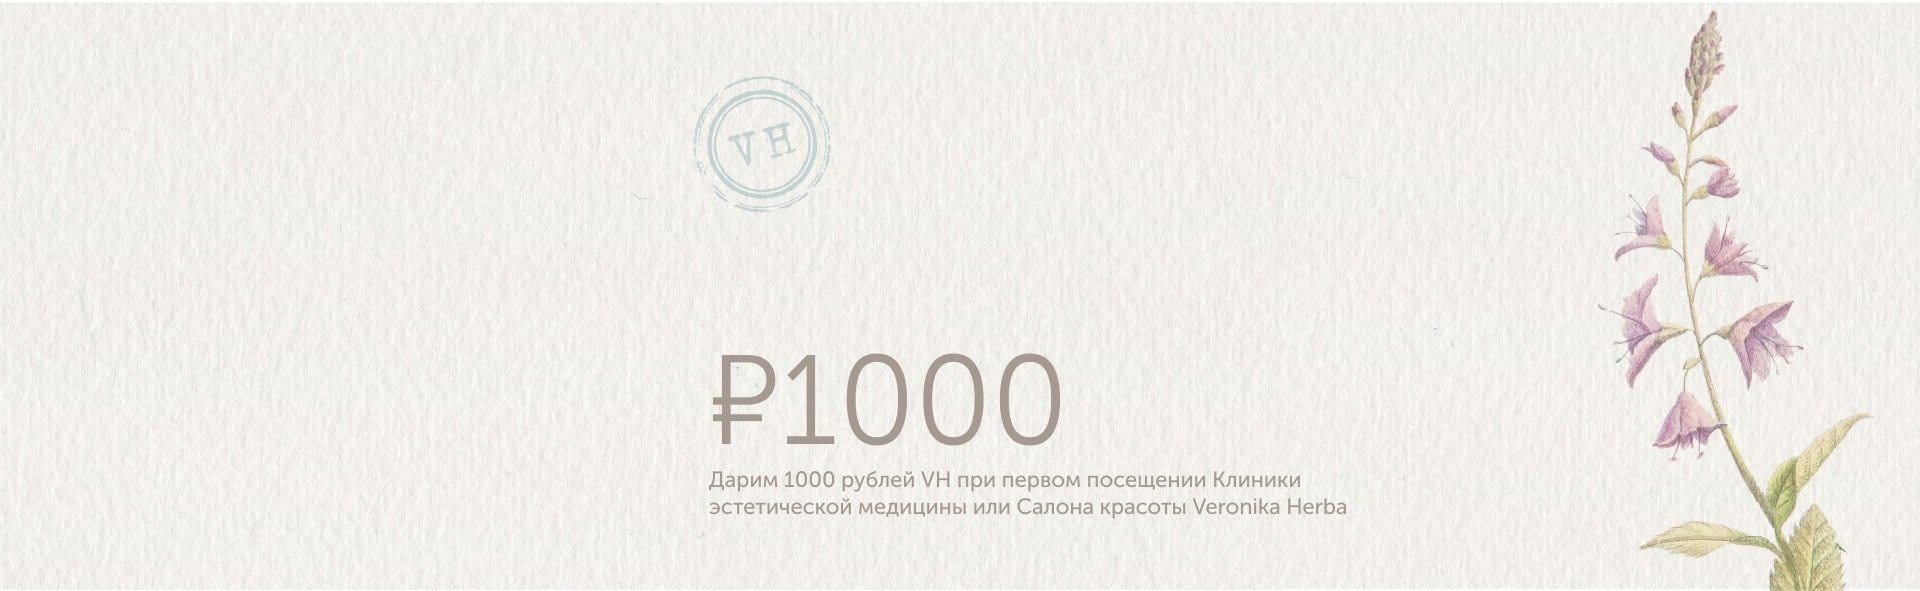 «1000 рублей VH» при первом посещении Клиники эстетической медицины или Салона красоты Veronika Herba